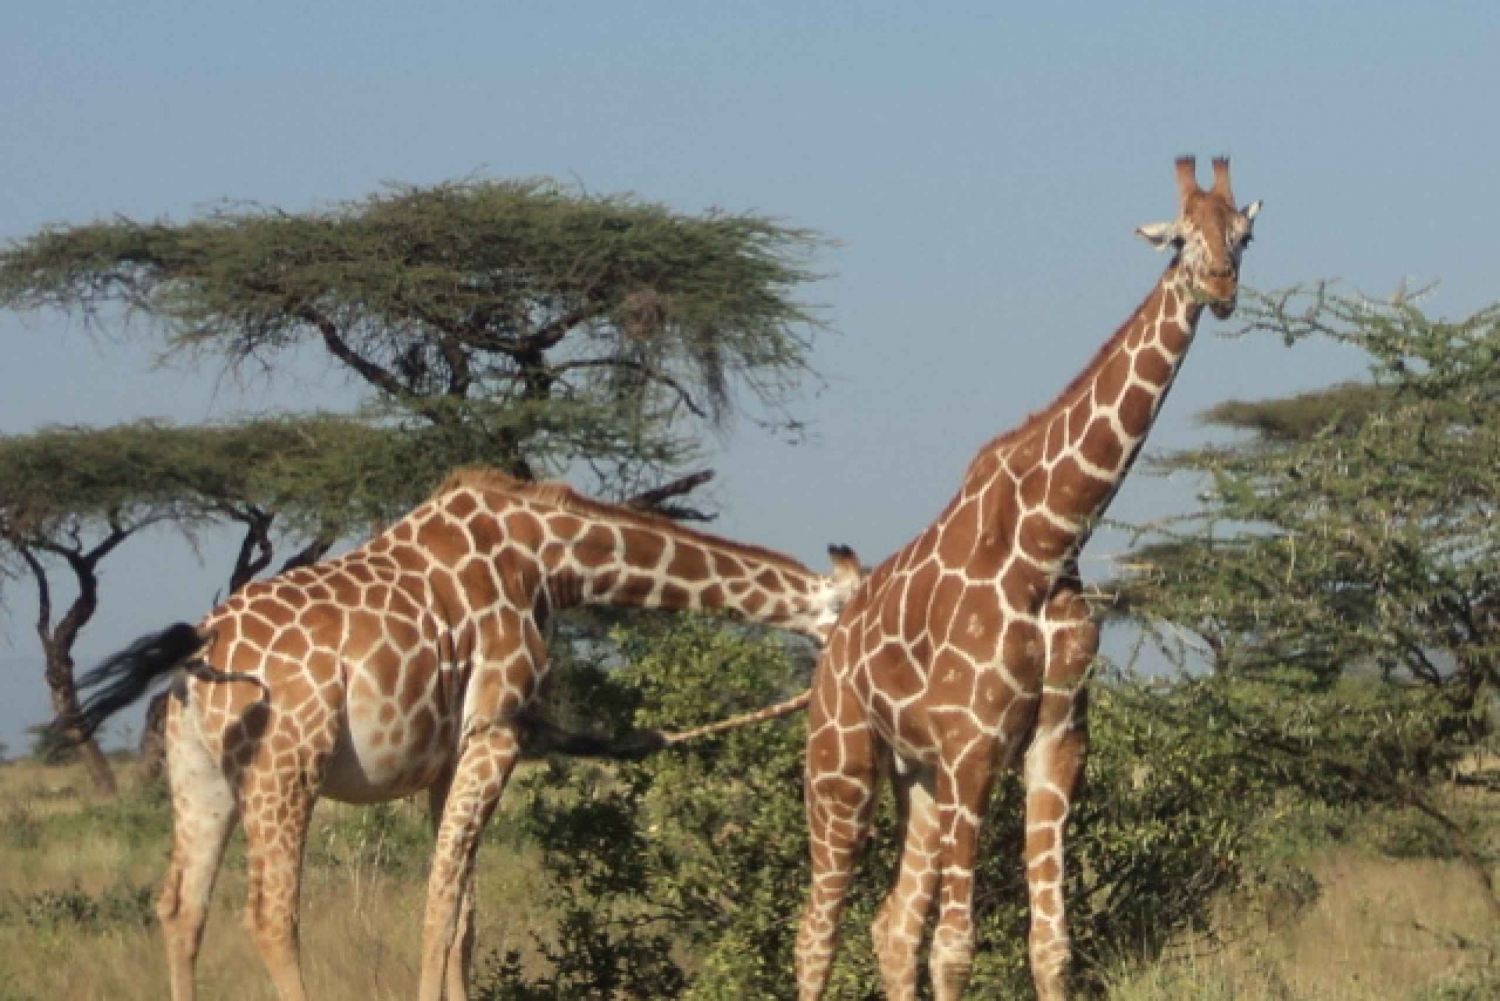 Giraffe Center and Karen Blixen Museum Tour from Nairobi